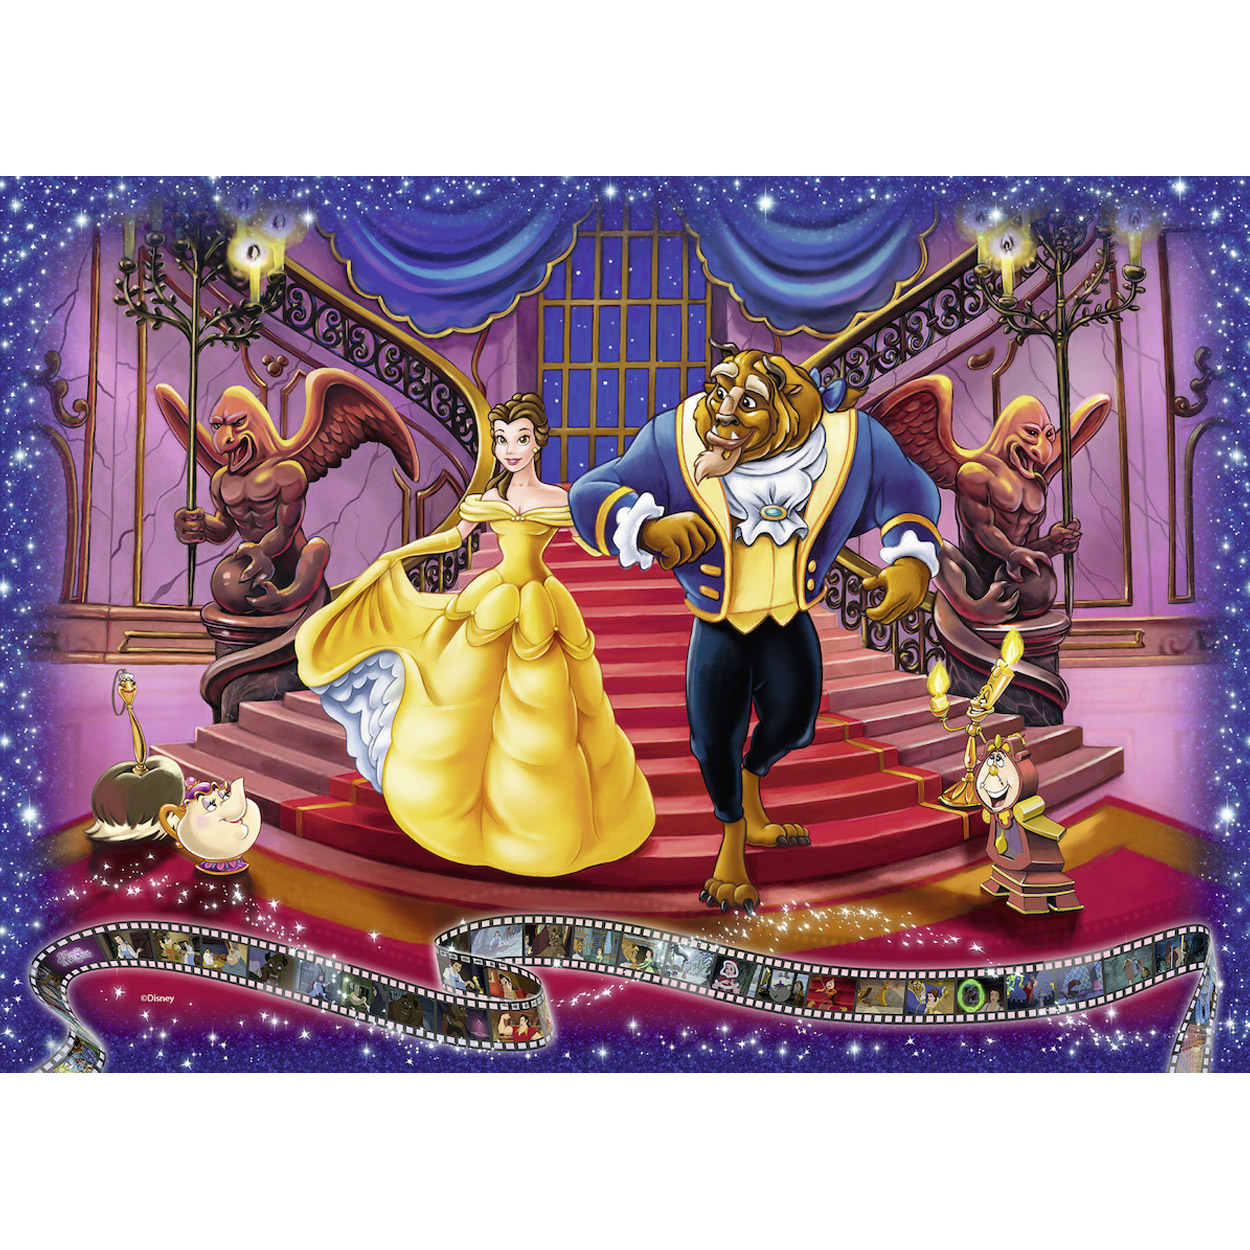 Puzzle Disney Schmidt 1000 p. La belle et la bête – La-magie-des